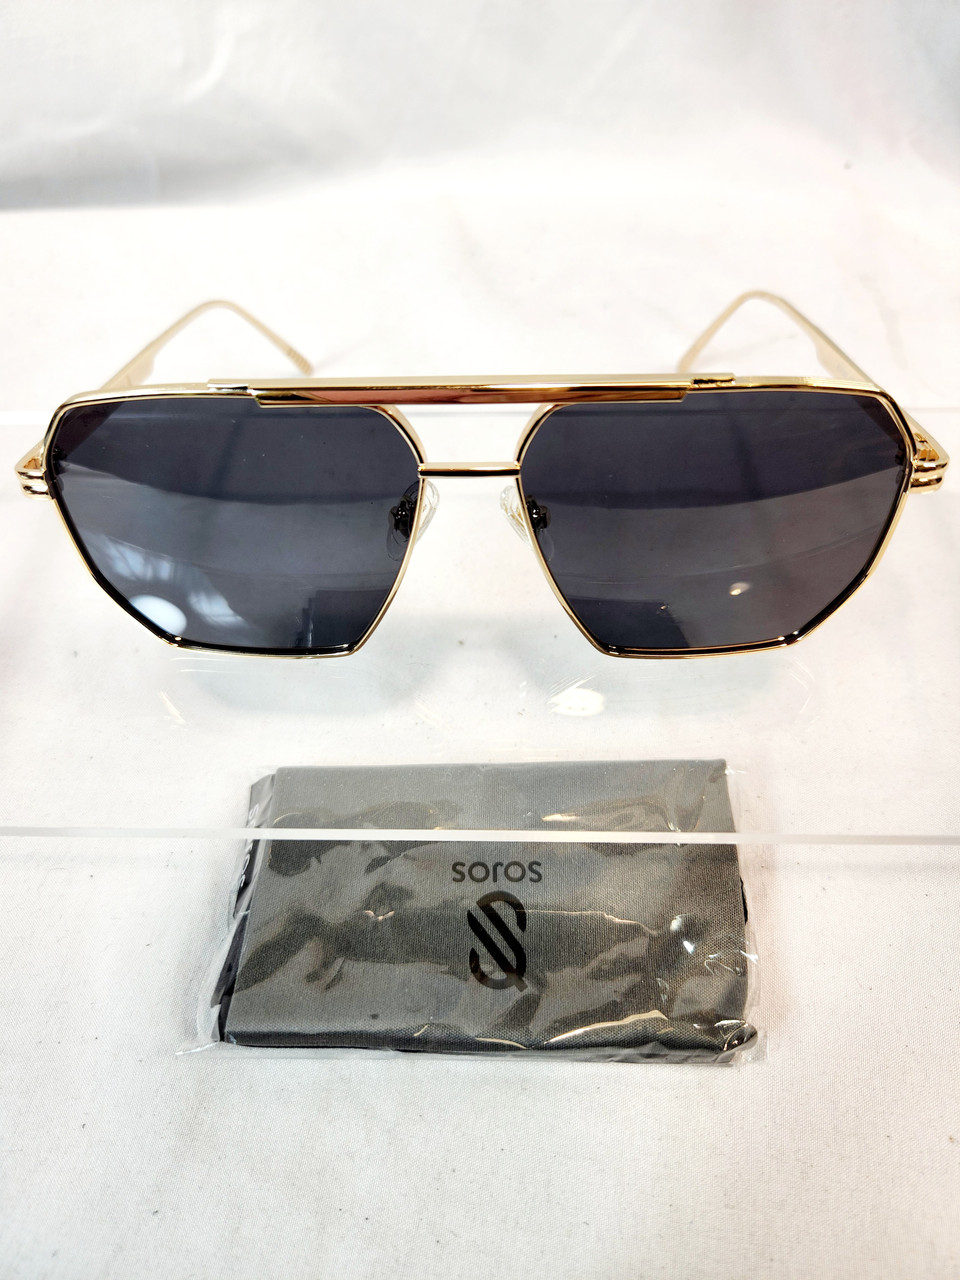 SOJOS Retro Round Double Bridge Polarized Sunglasses for Women Men Twi –  lookingGLASS Lifestyle